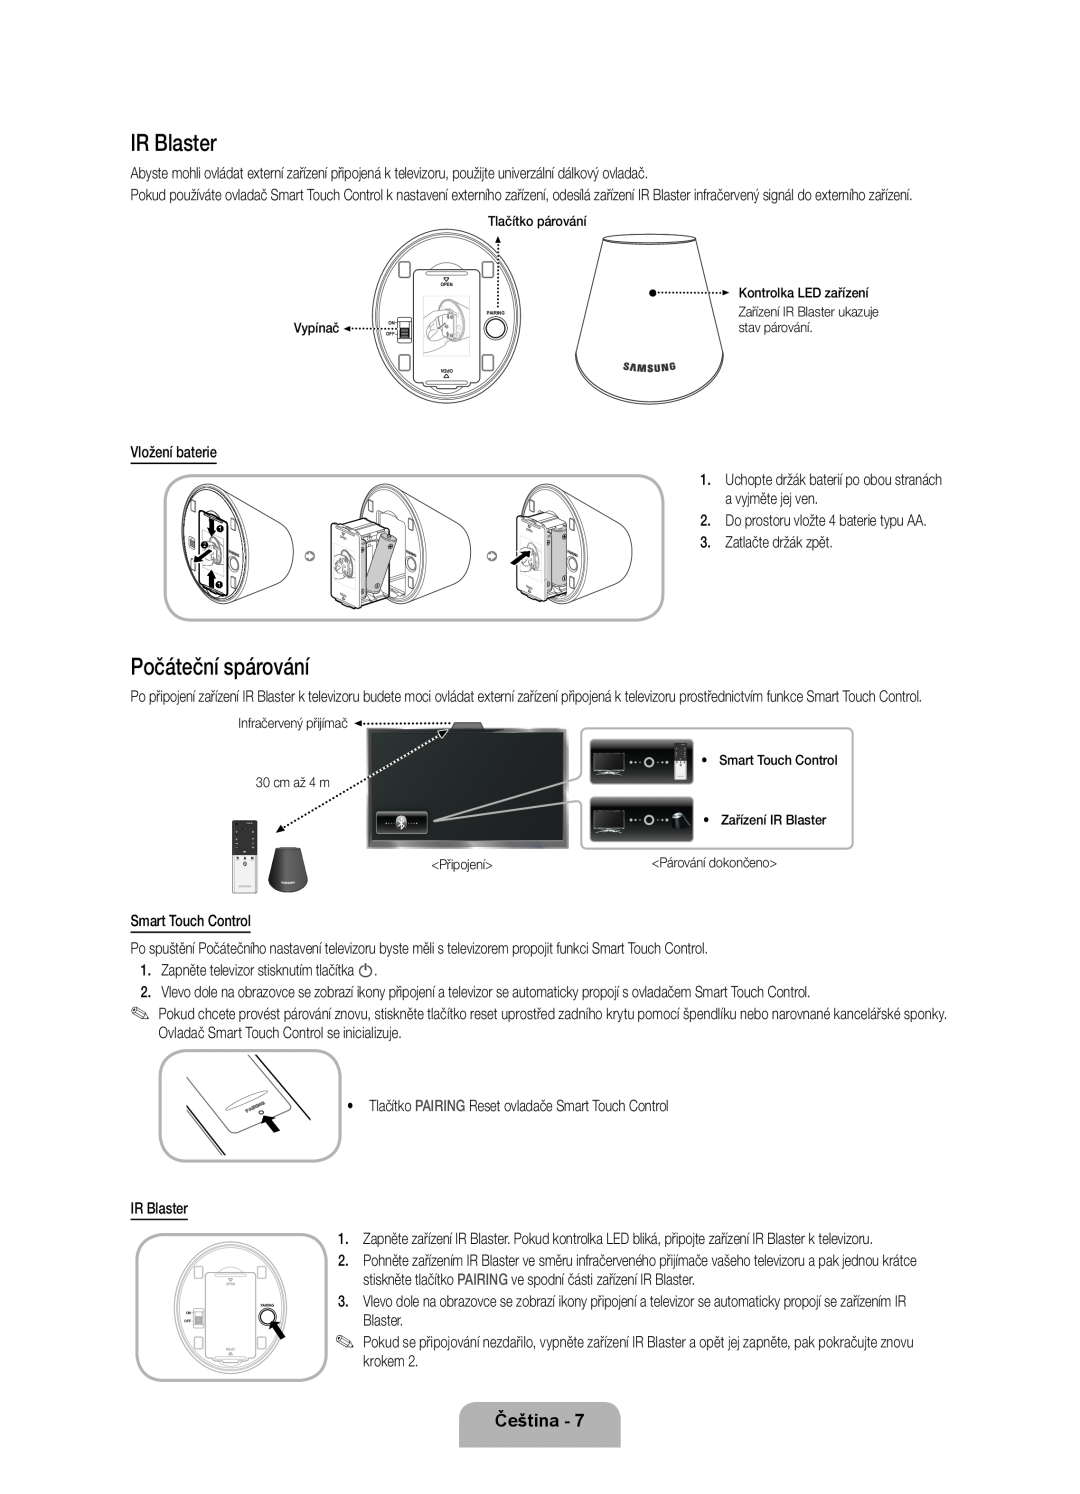 Samsung UE55ES8000SXXH manual Počáteční spárování, IR Blaster, Čeština, Kontrolka LED zařízení, Vypínač, stav párování 